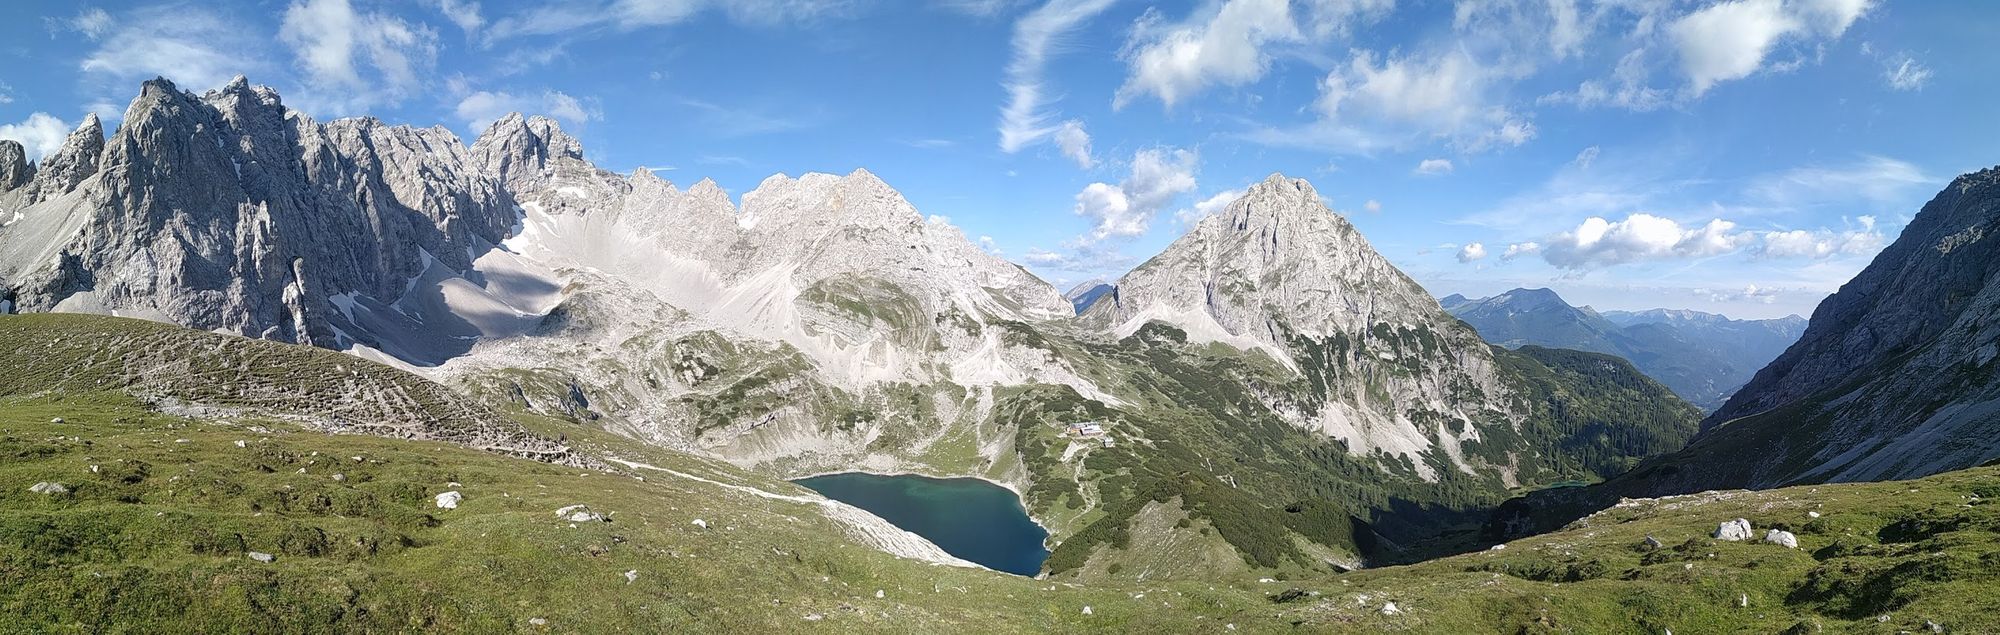 Plaisir climbing in the Zugspitze region